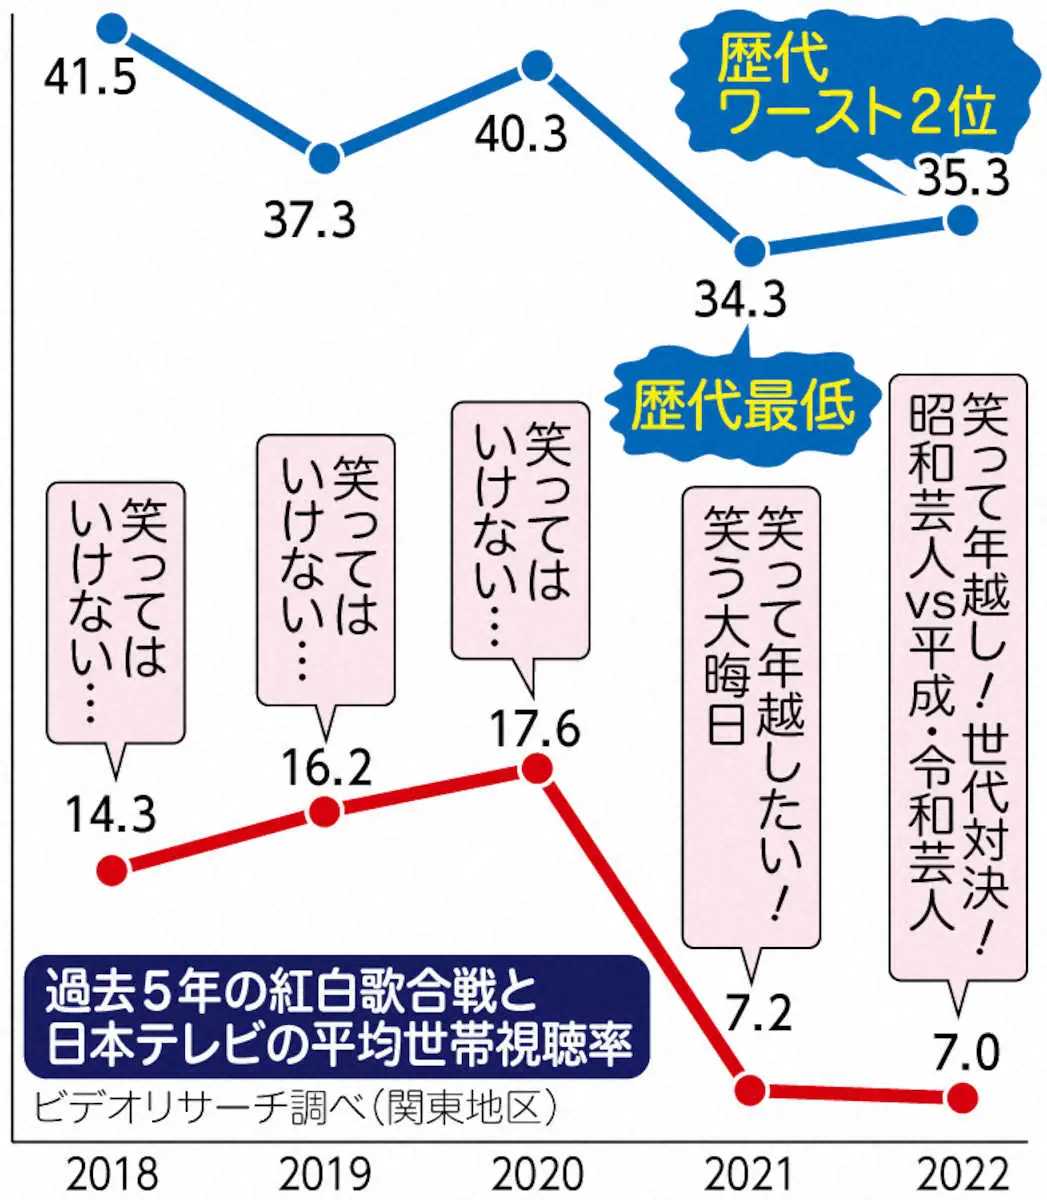 過去5年の紅白歌合戦と日本テレビの平均世帯視聴率